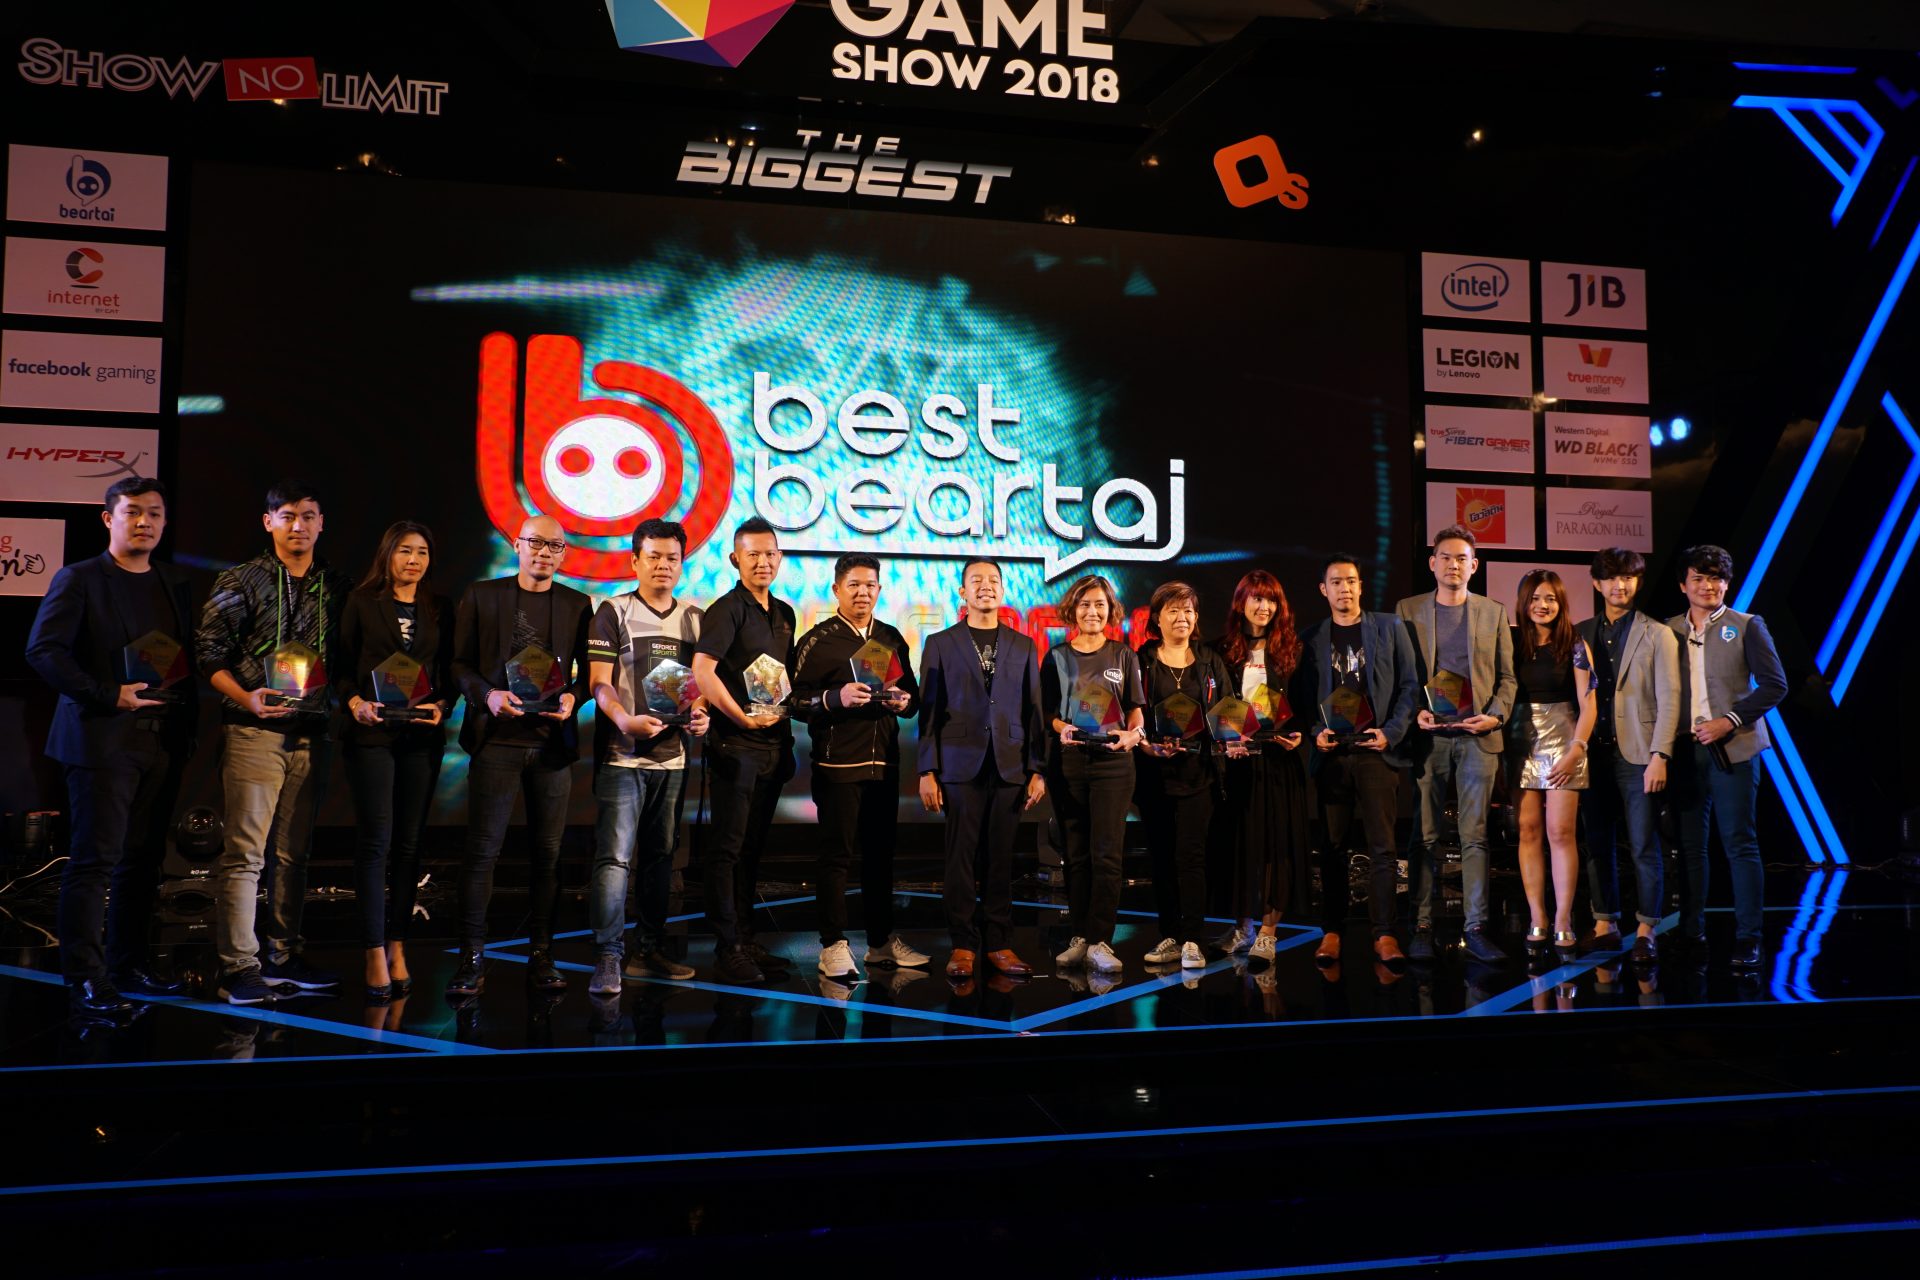 สรุปผล “Best Beartai Awards 2018” สุดยอดรางวัลทรงคุณค่าแห่งวงการไอที!!